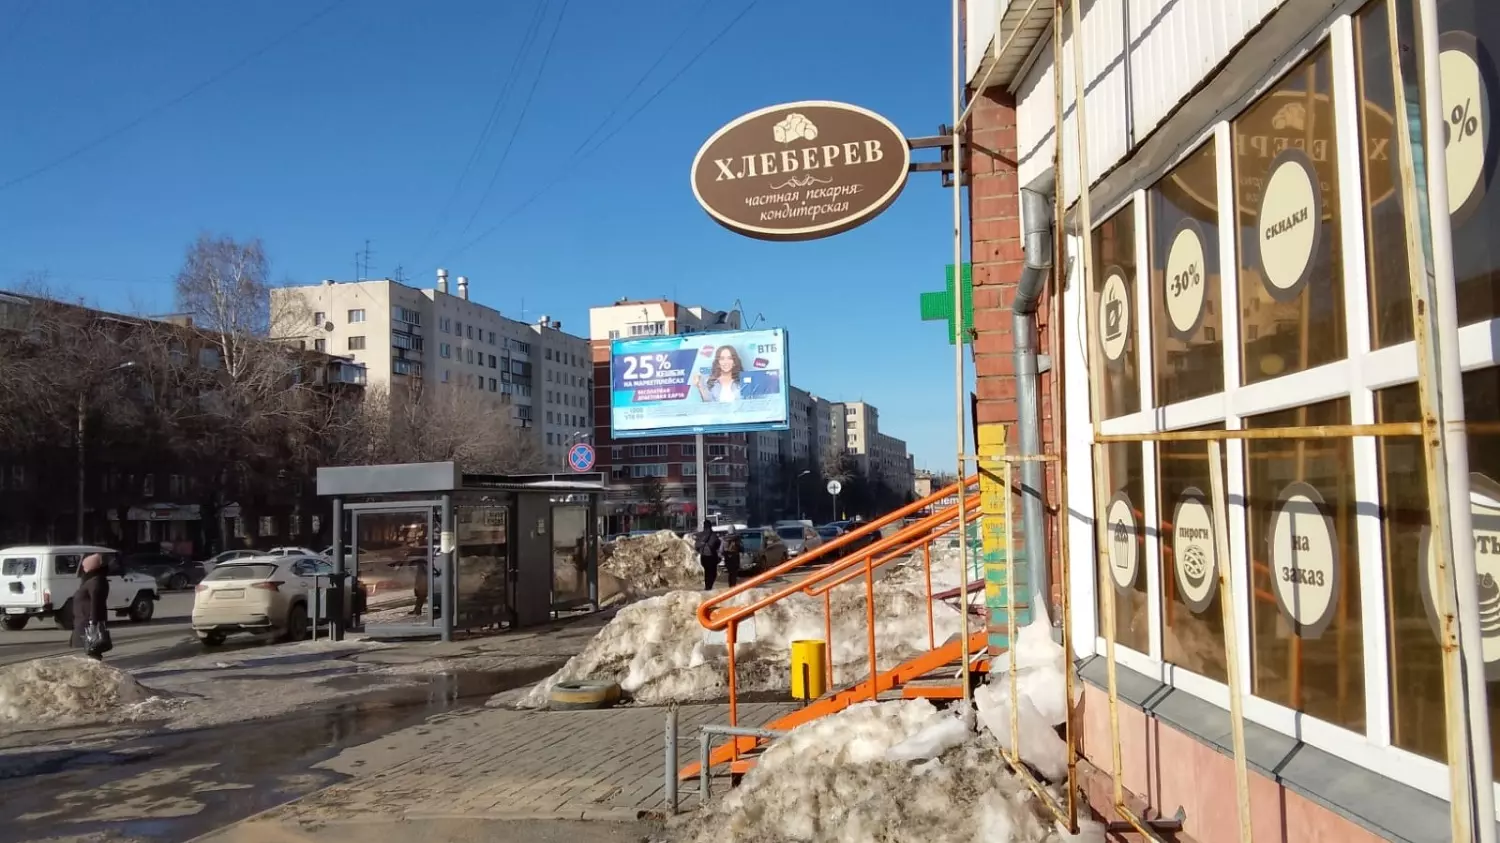 Магазин «Хлеберев» на улице Энтузиастов